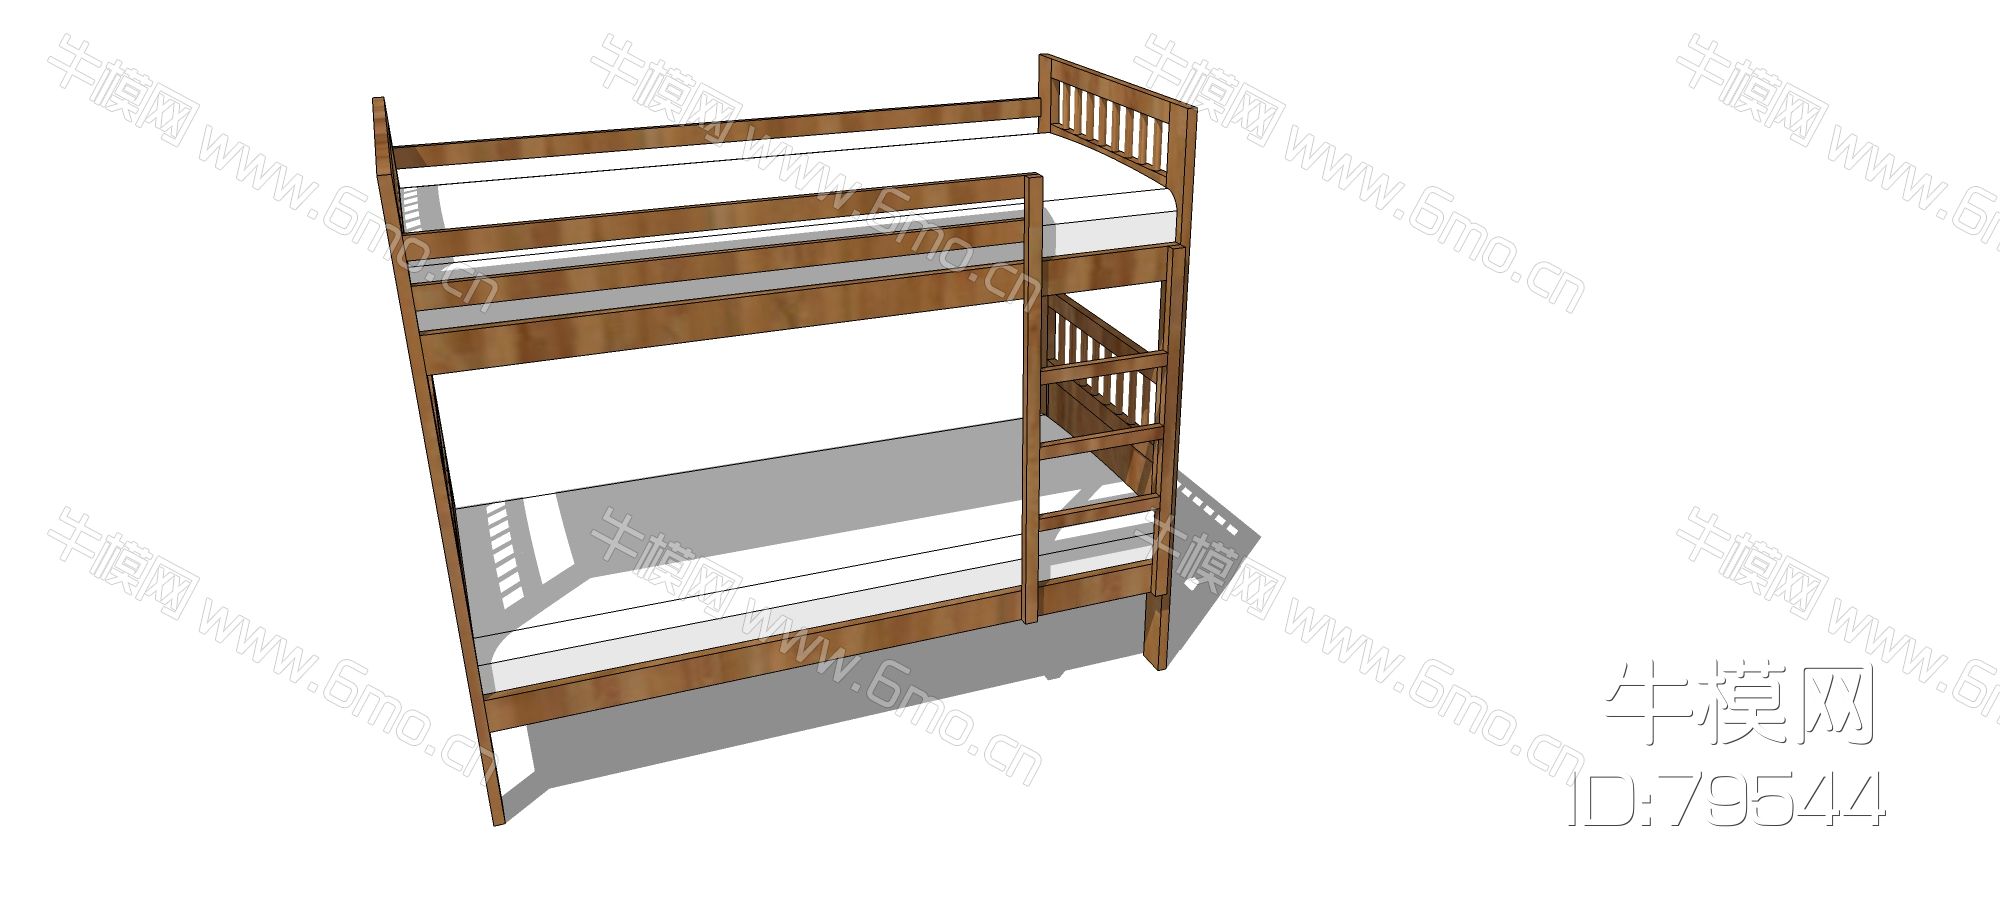 现代实木上铺高低床